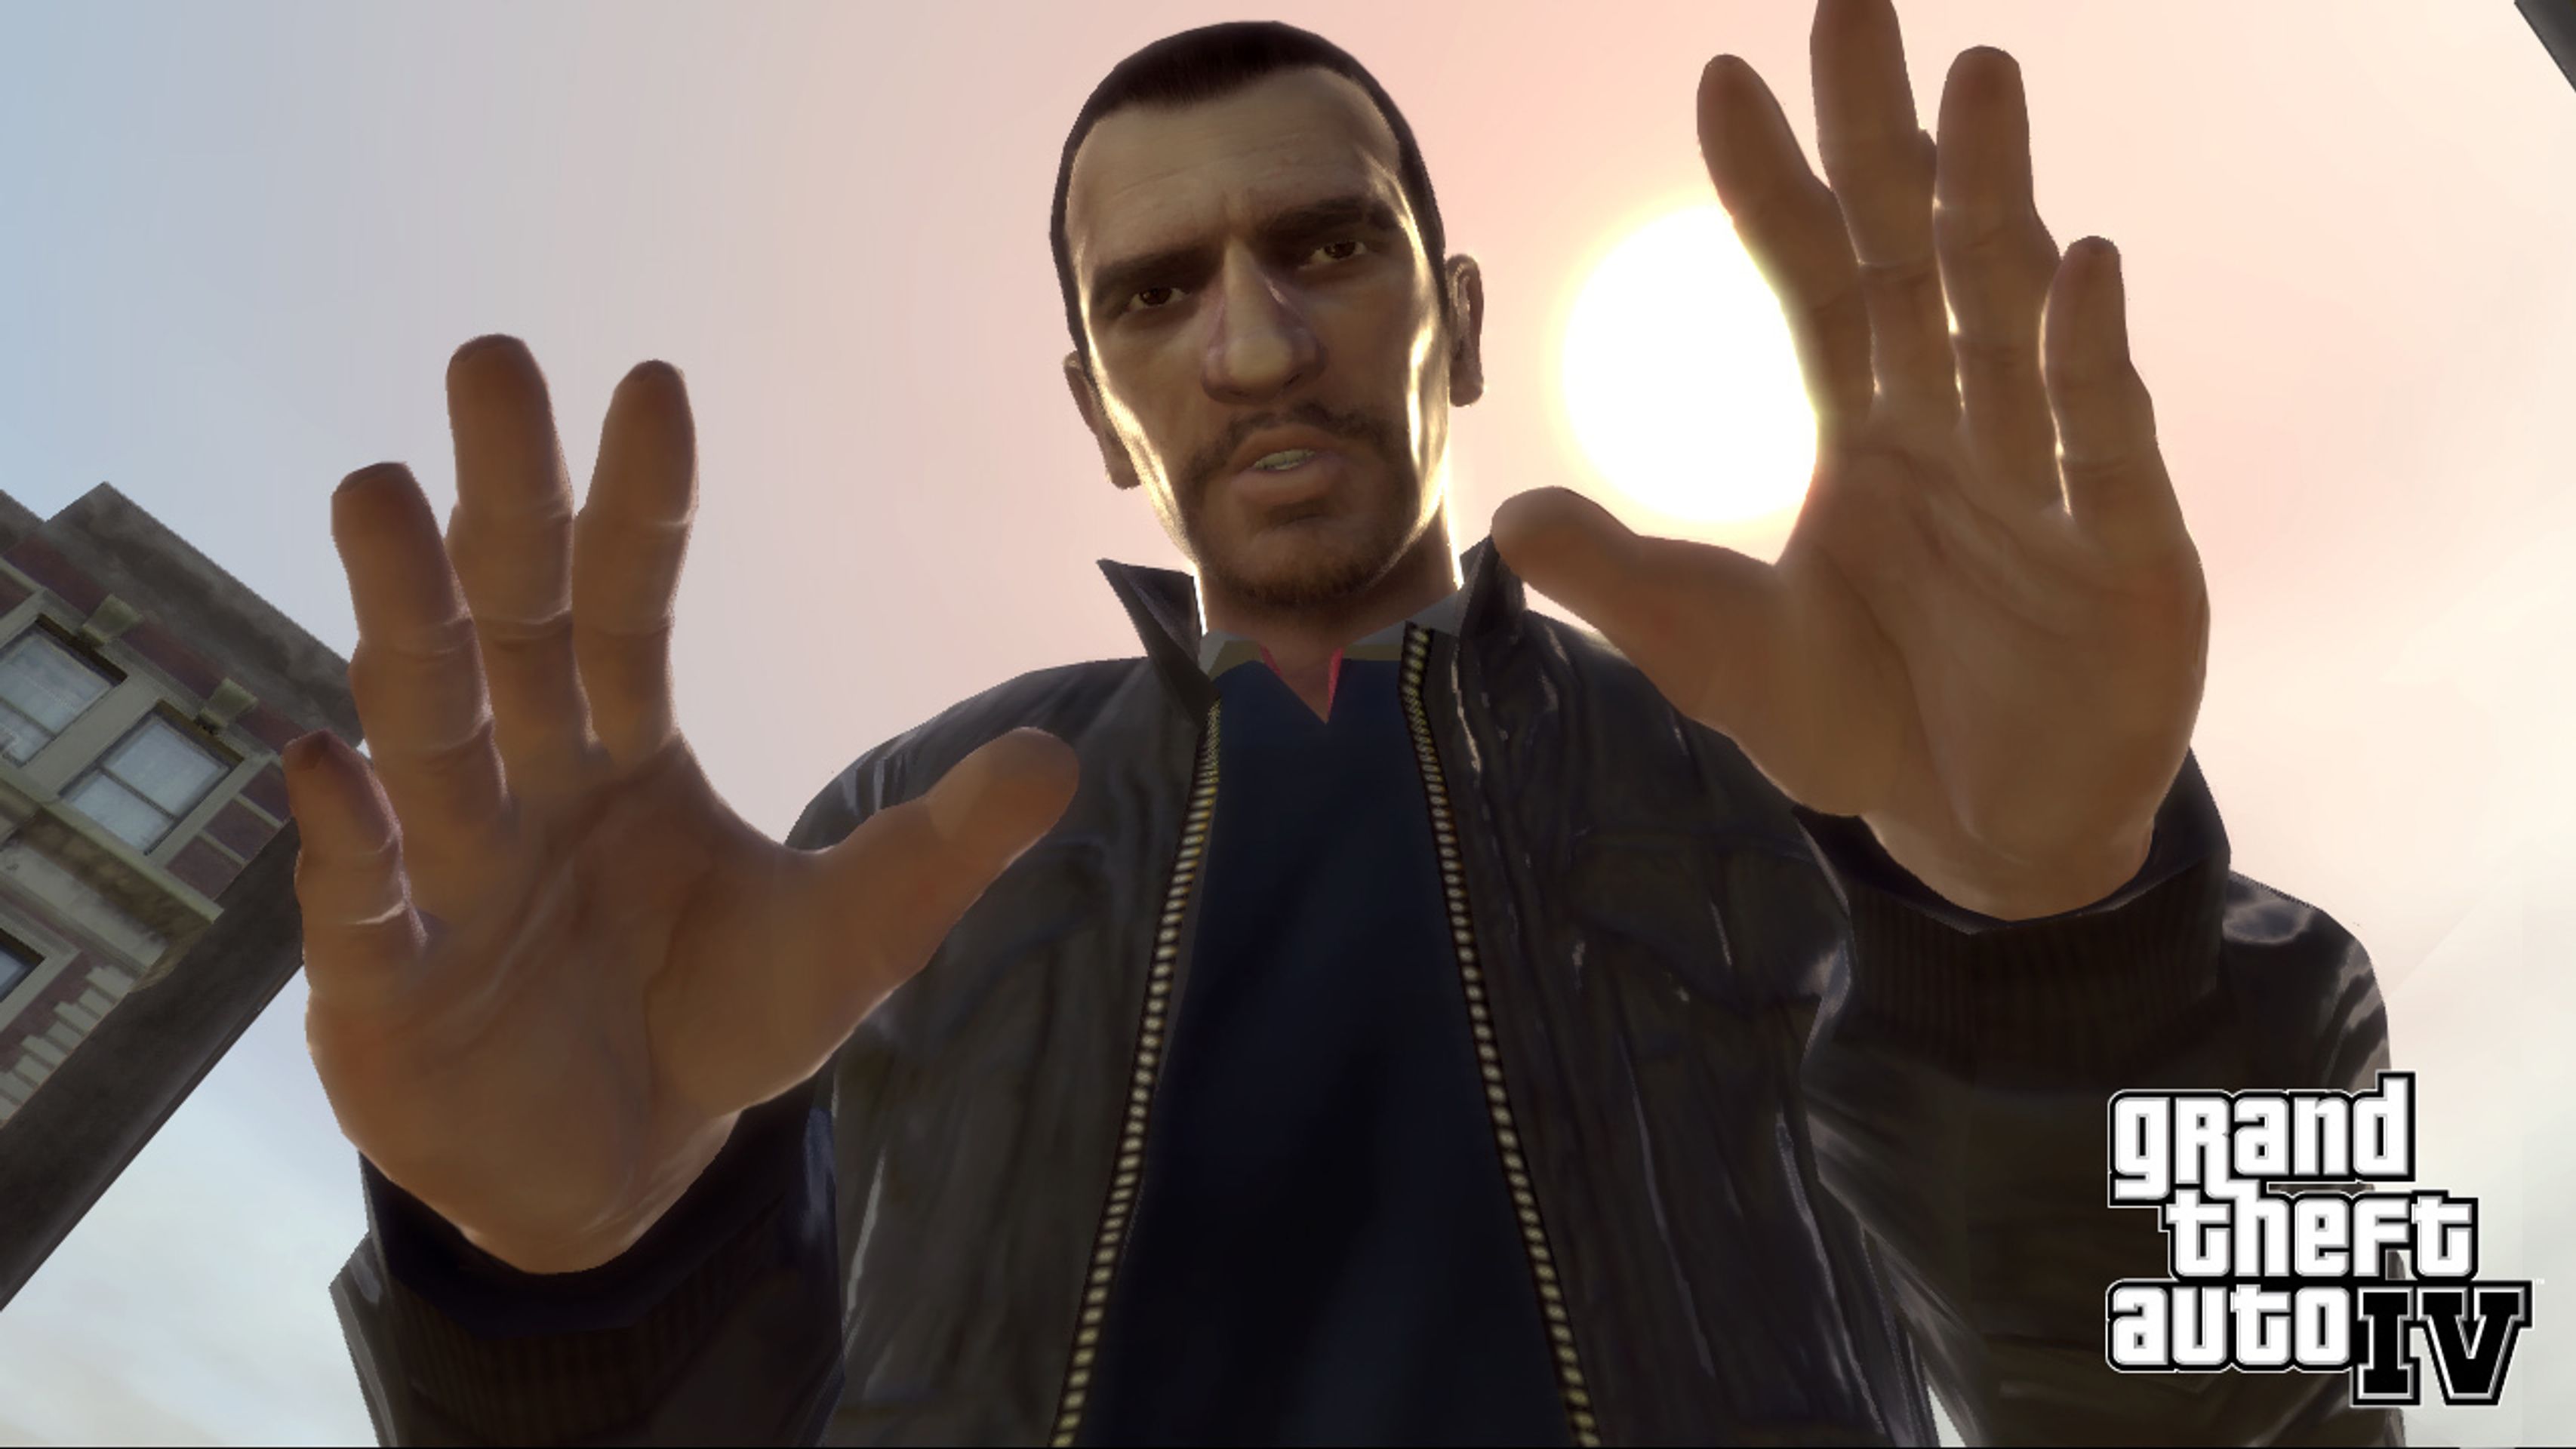 Grand Theft Auto IV - Grand Theft Auto IV galerie (5/10)